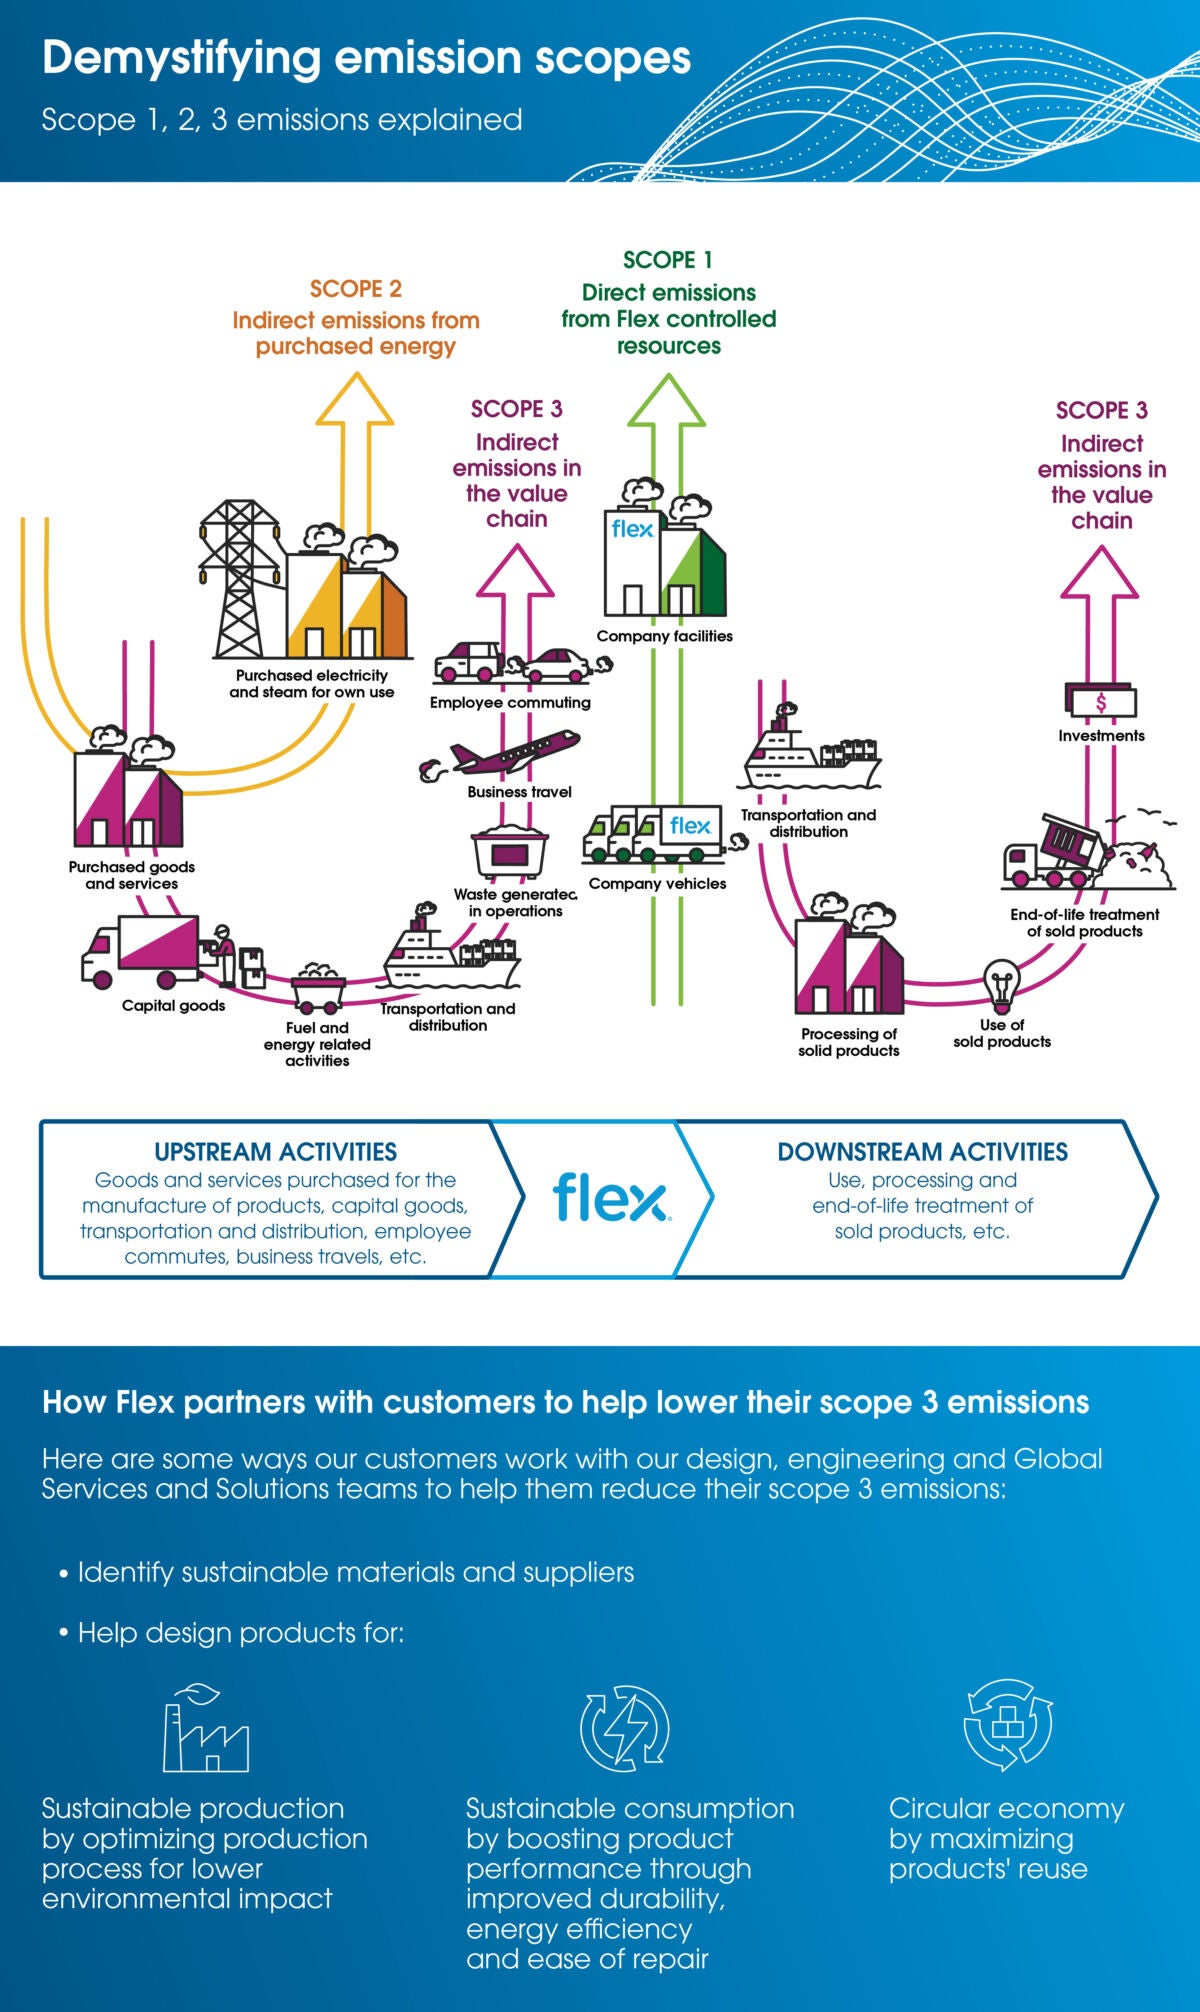 Flex Nachhaltigkeit: Die Emissionsbereiche 1, 2 und 3 entmystifizieren